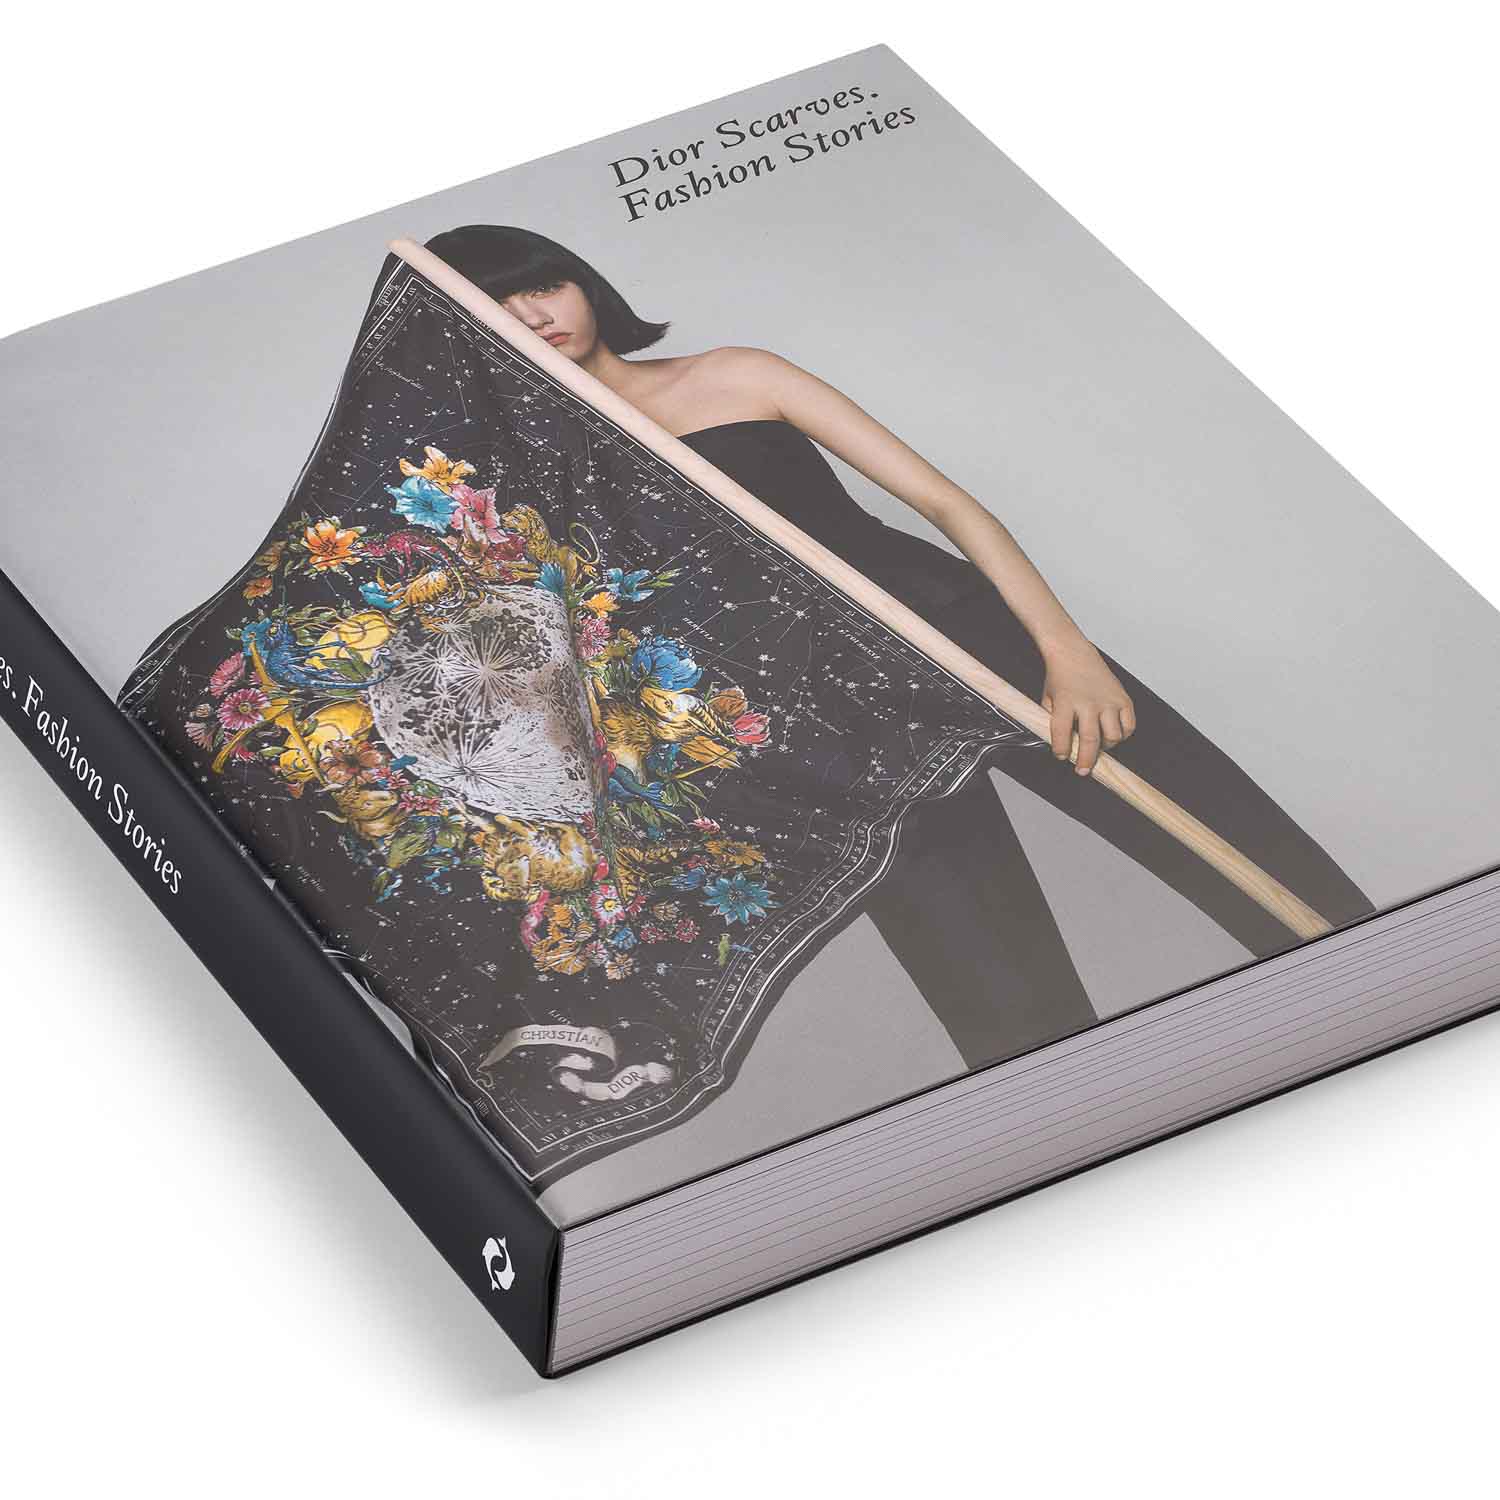  „Dior Scafs: Fashion Stories“, 750 Seiten, 500 Abbildungen, Thames & Hudson